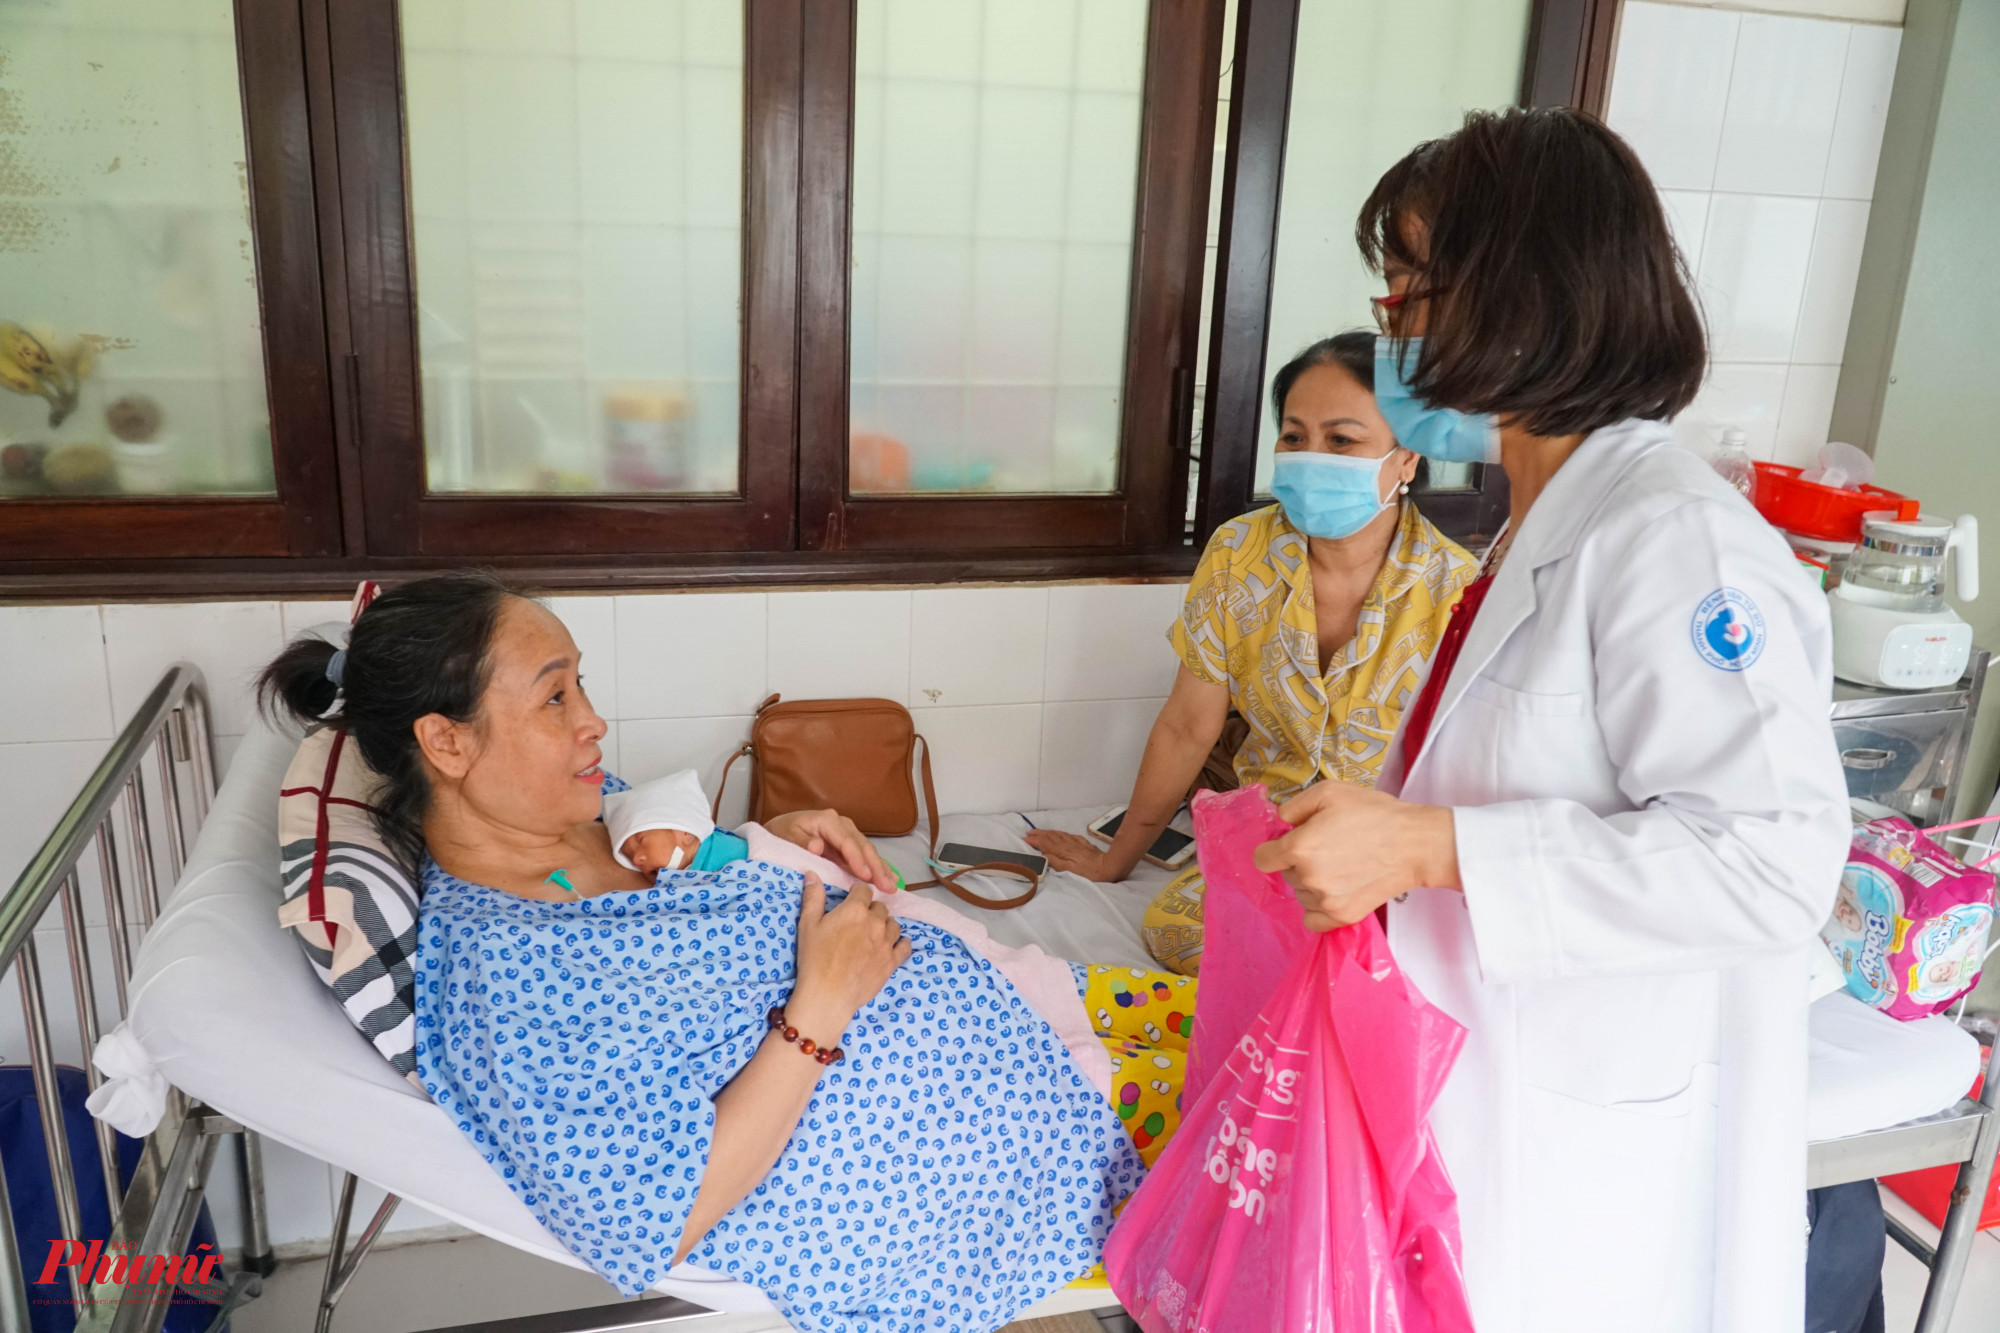 Các bé sinh non được các bác sĩ tận tình chăm sóc, hỏi thăm sức khỏe bé và mẹ bé thường xuyên